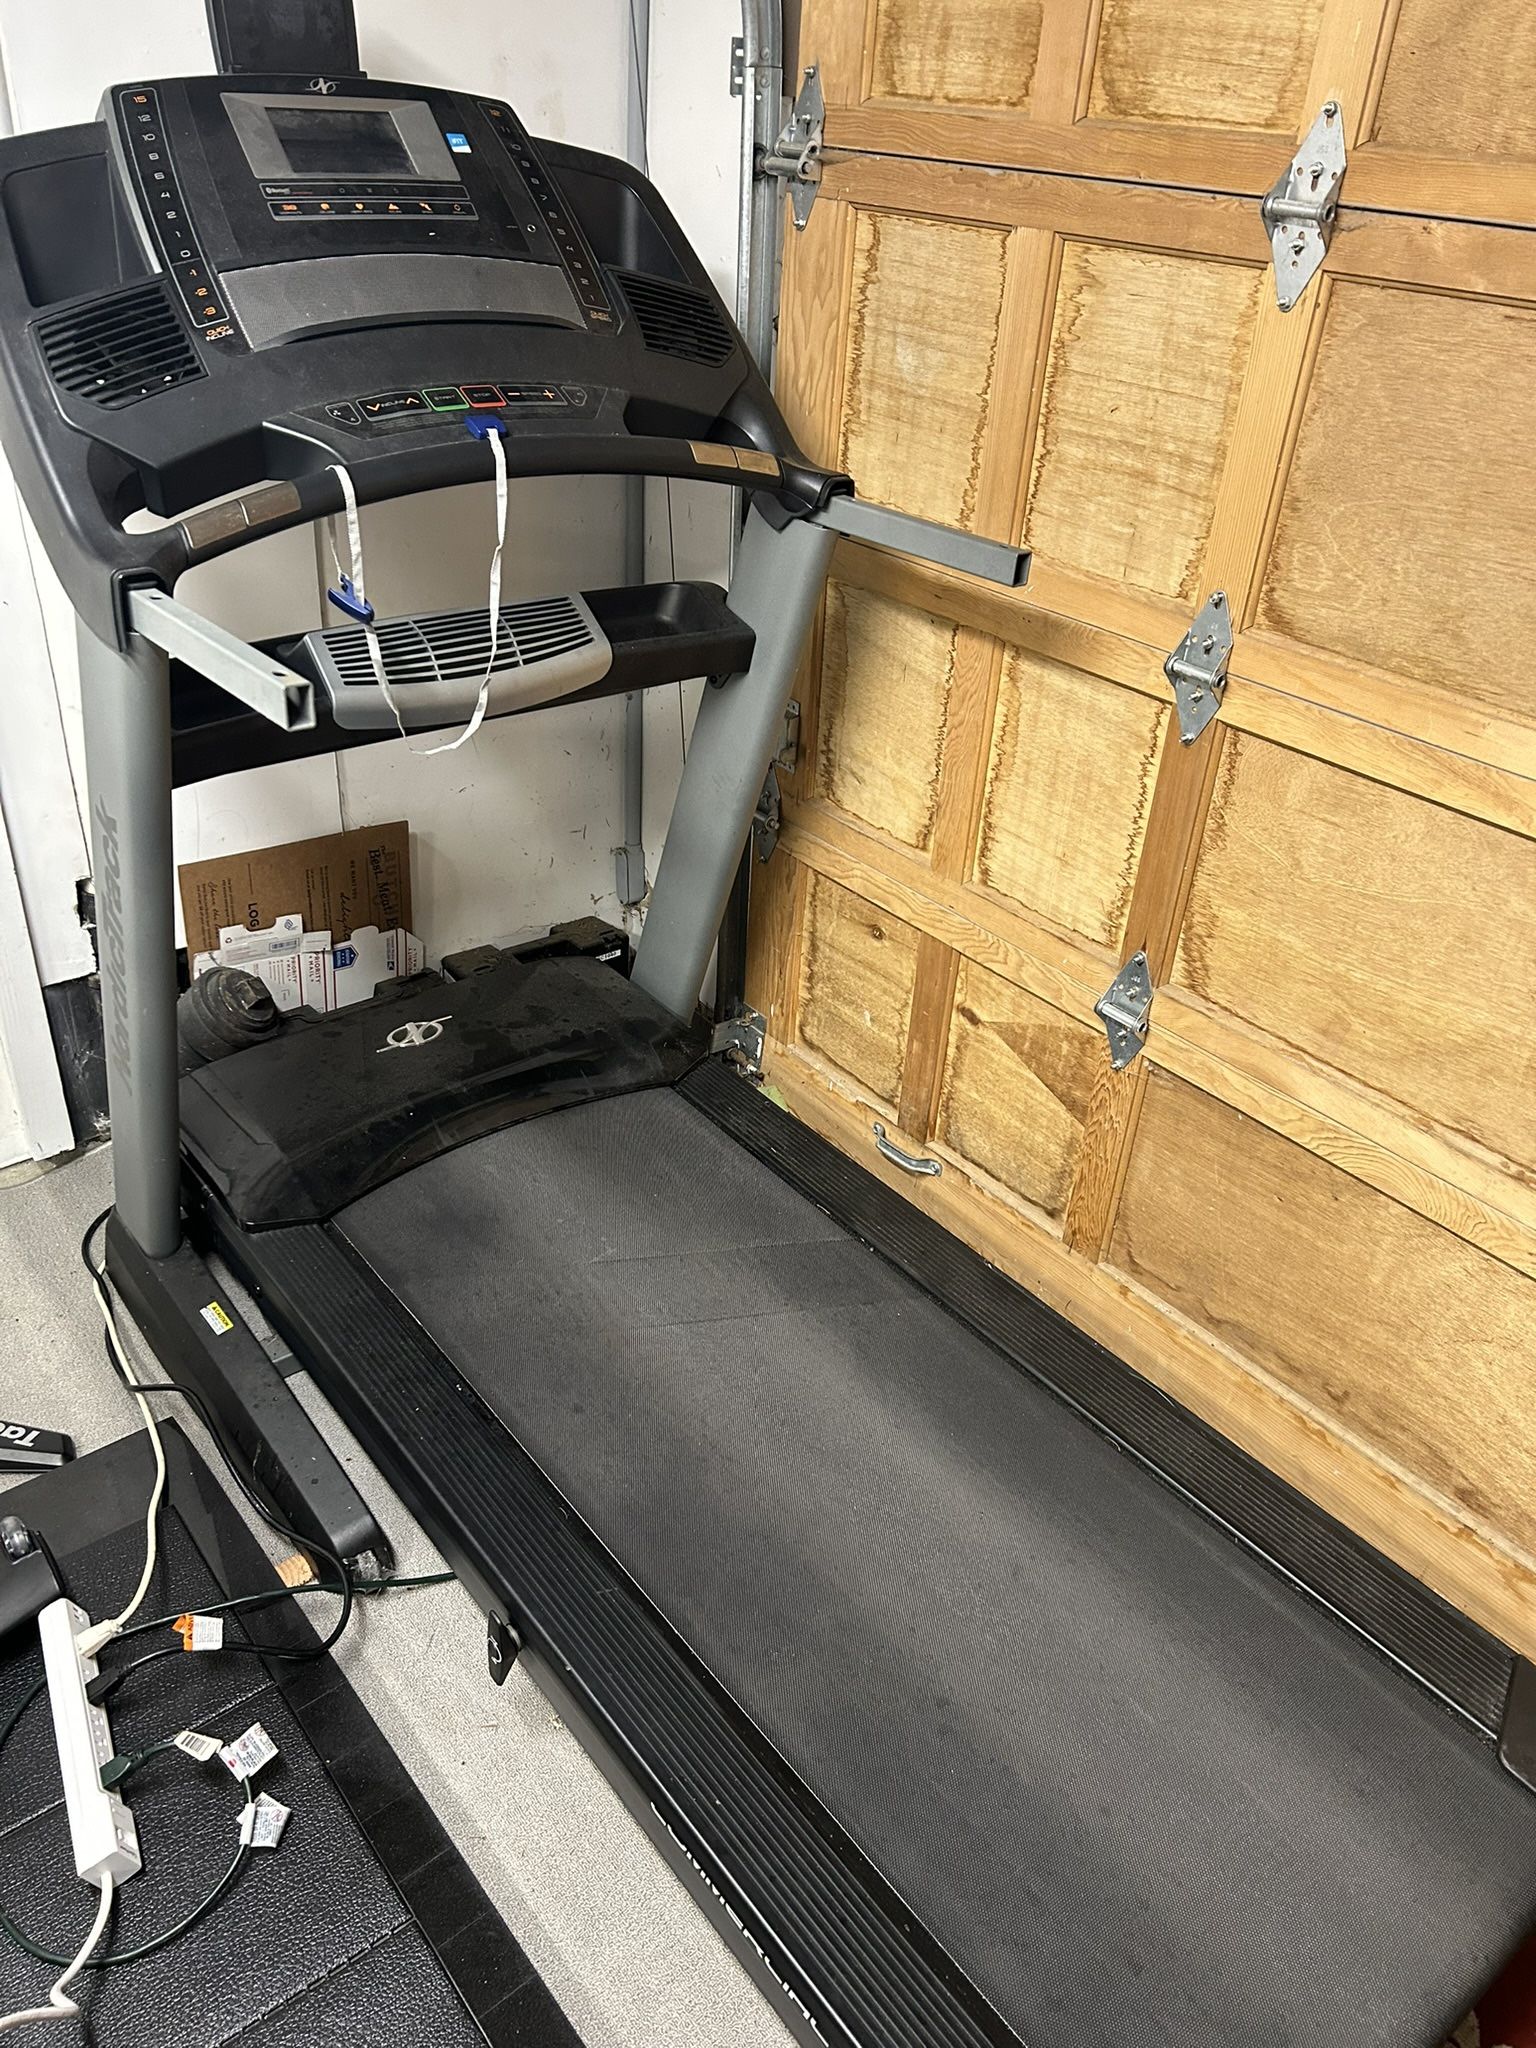 Nordic track Treadmill